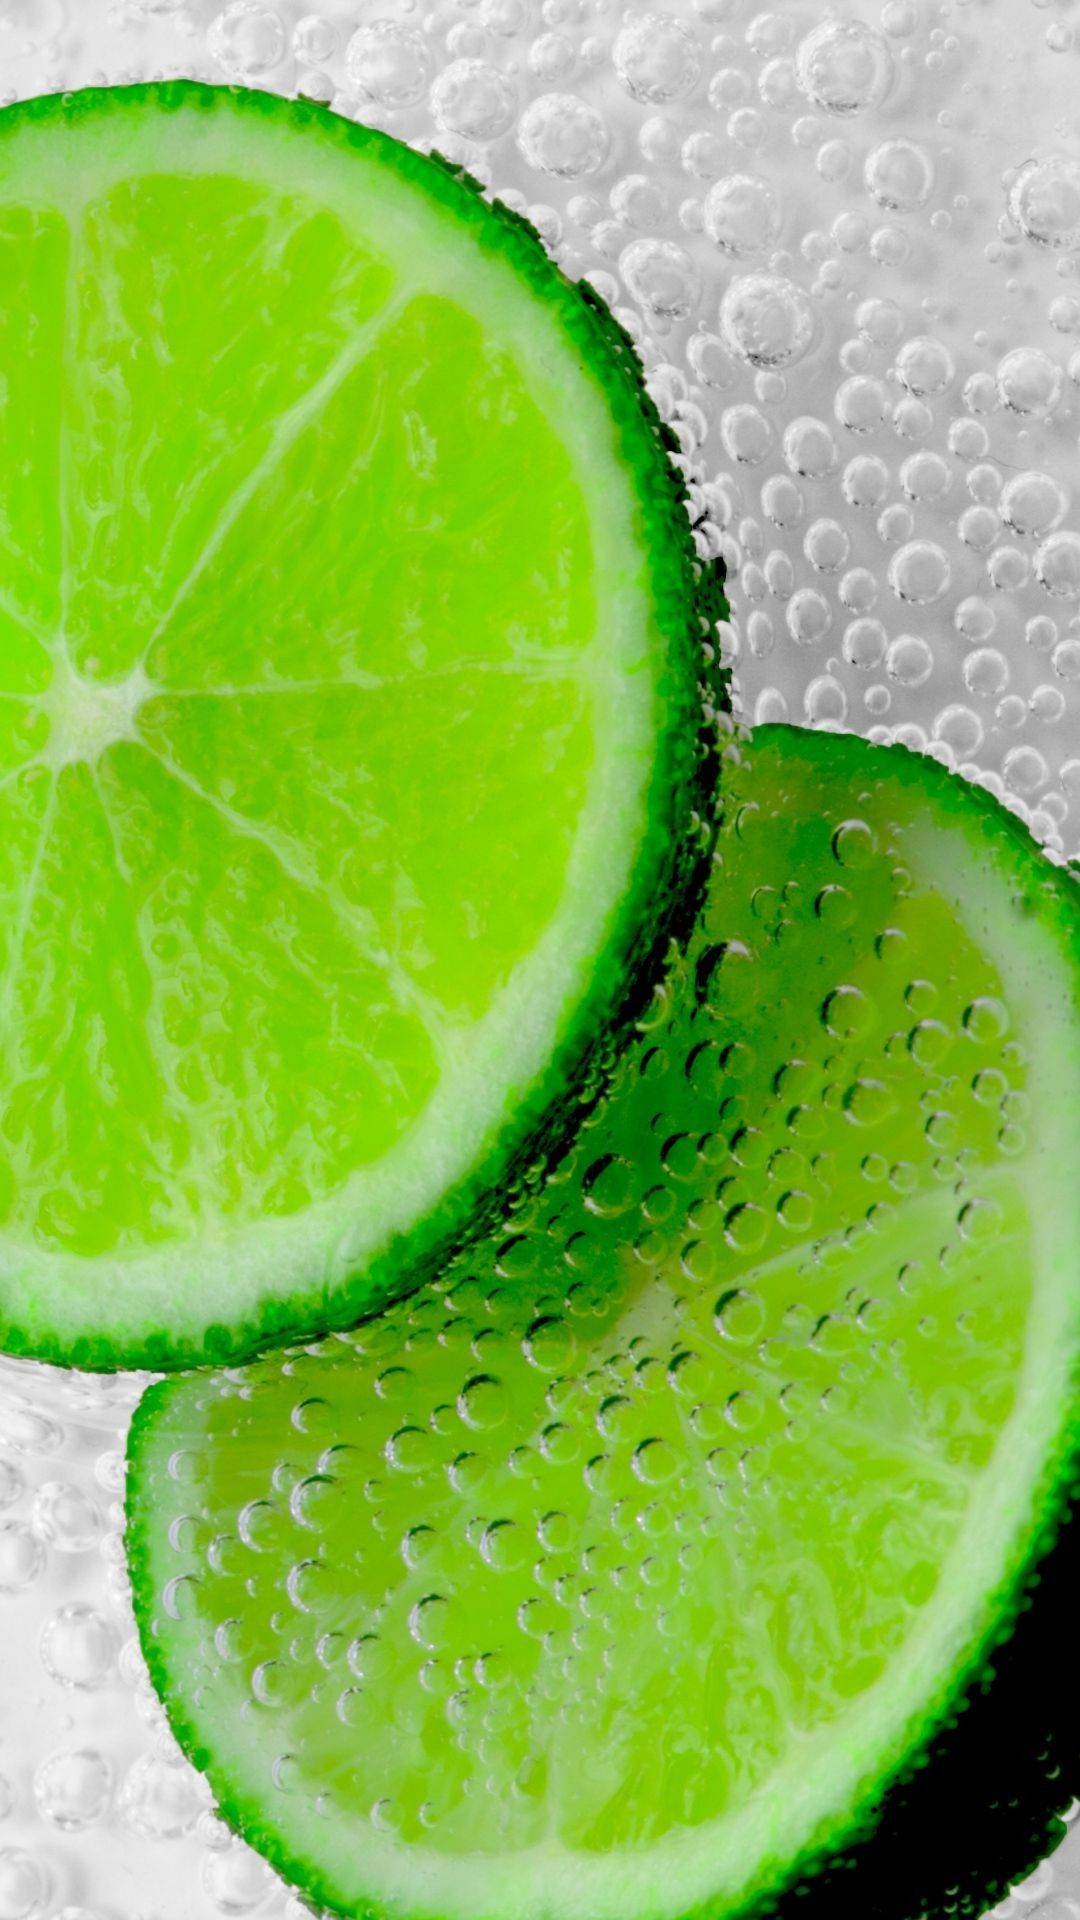 تصویر پس زمینه زیبا و جالب از لیمو ترش سبز رنگ با قطرات آب